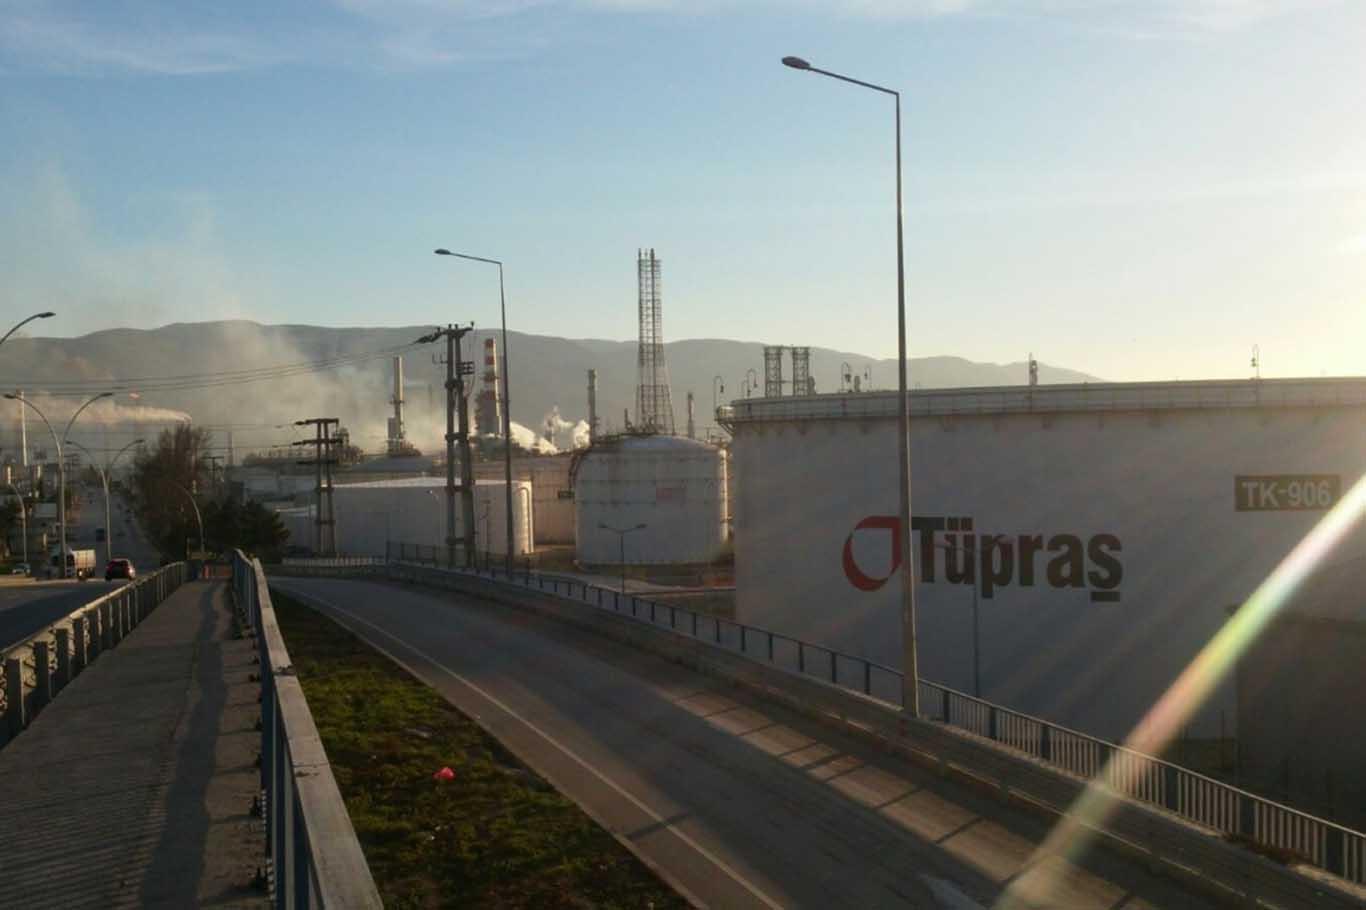 TÜPRAŞ İzmir Rafinerisi'ndeki patlamaya ilişkin 7 gözaltı